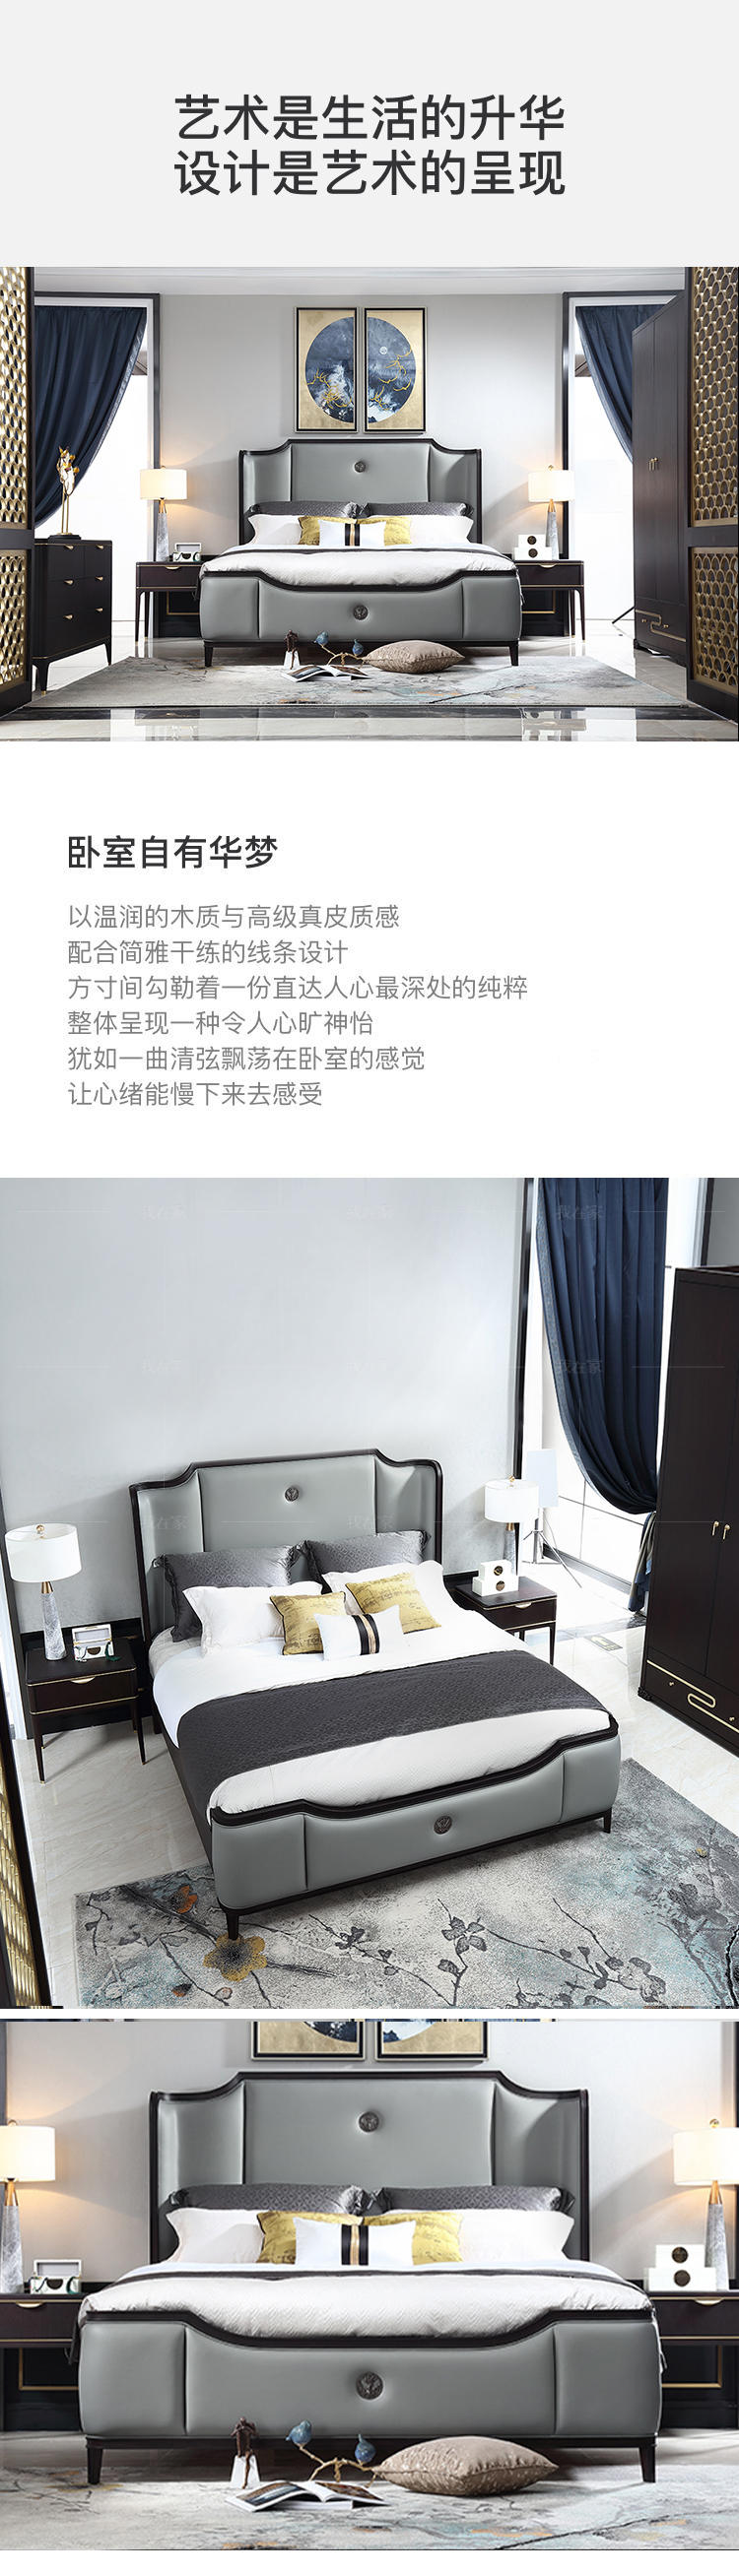 中式轻奢风格源溯真皮床的家具详细介绍